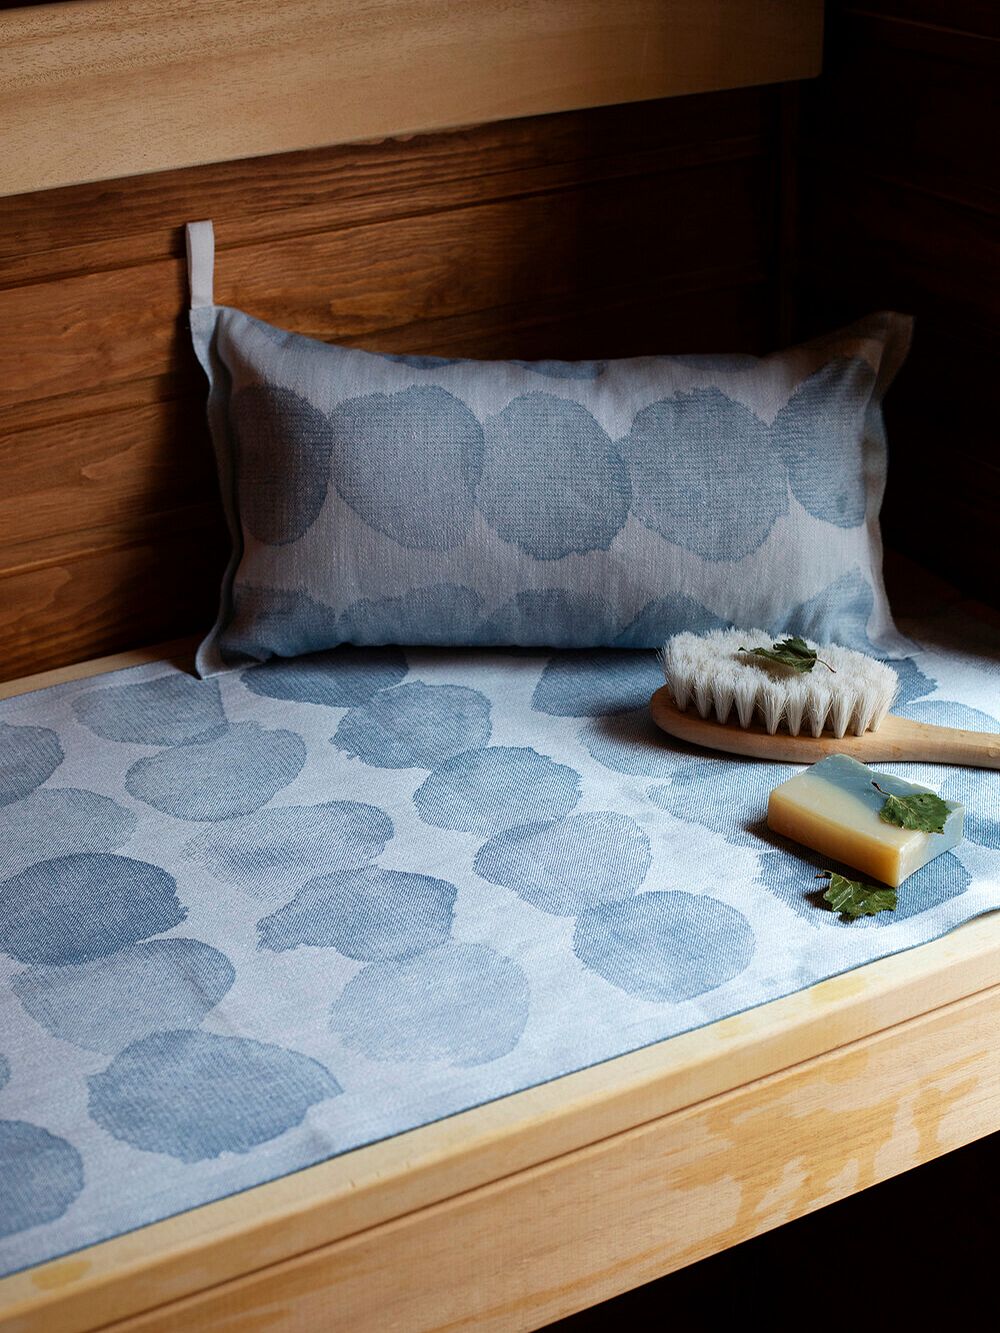 An image of Sade sauna cover and Sade sauna pillow in the sauna, as part of the summer home decor.